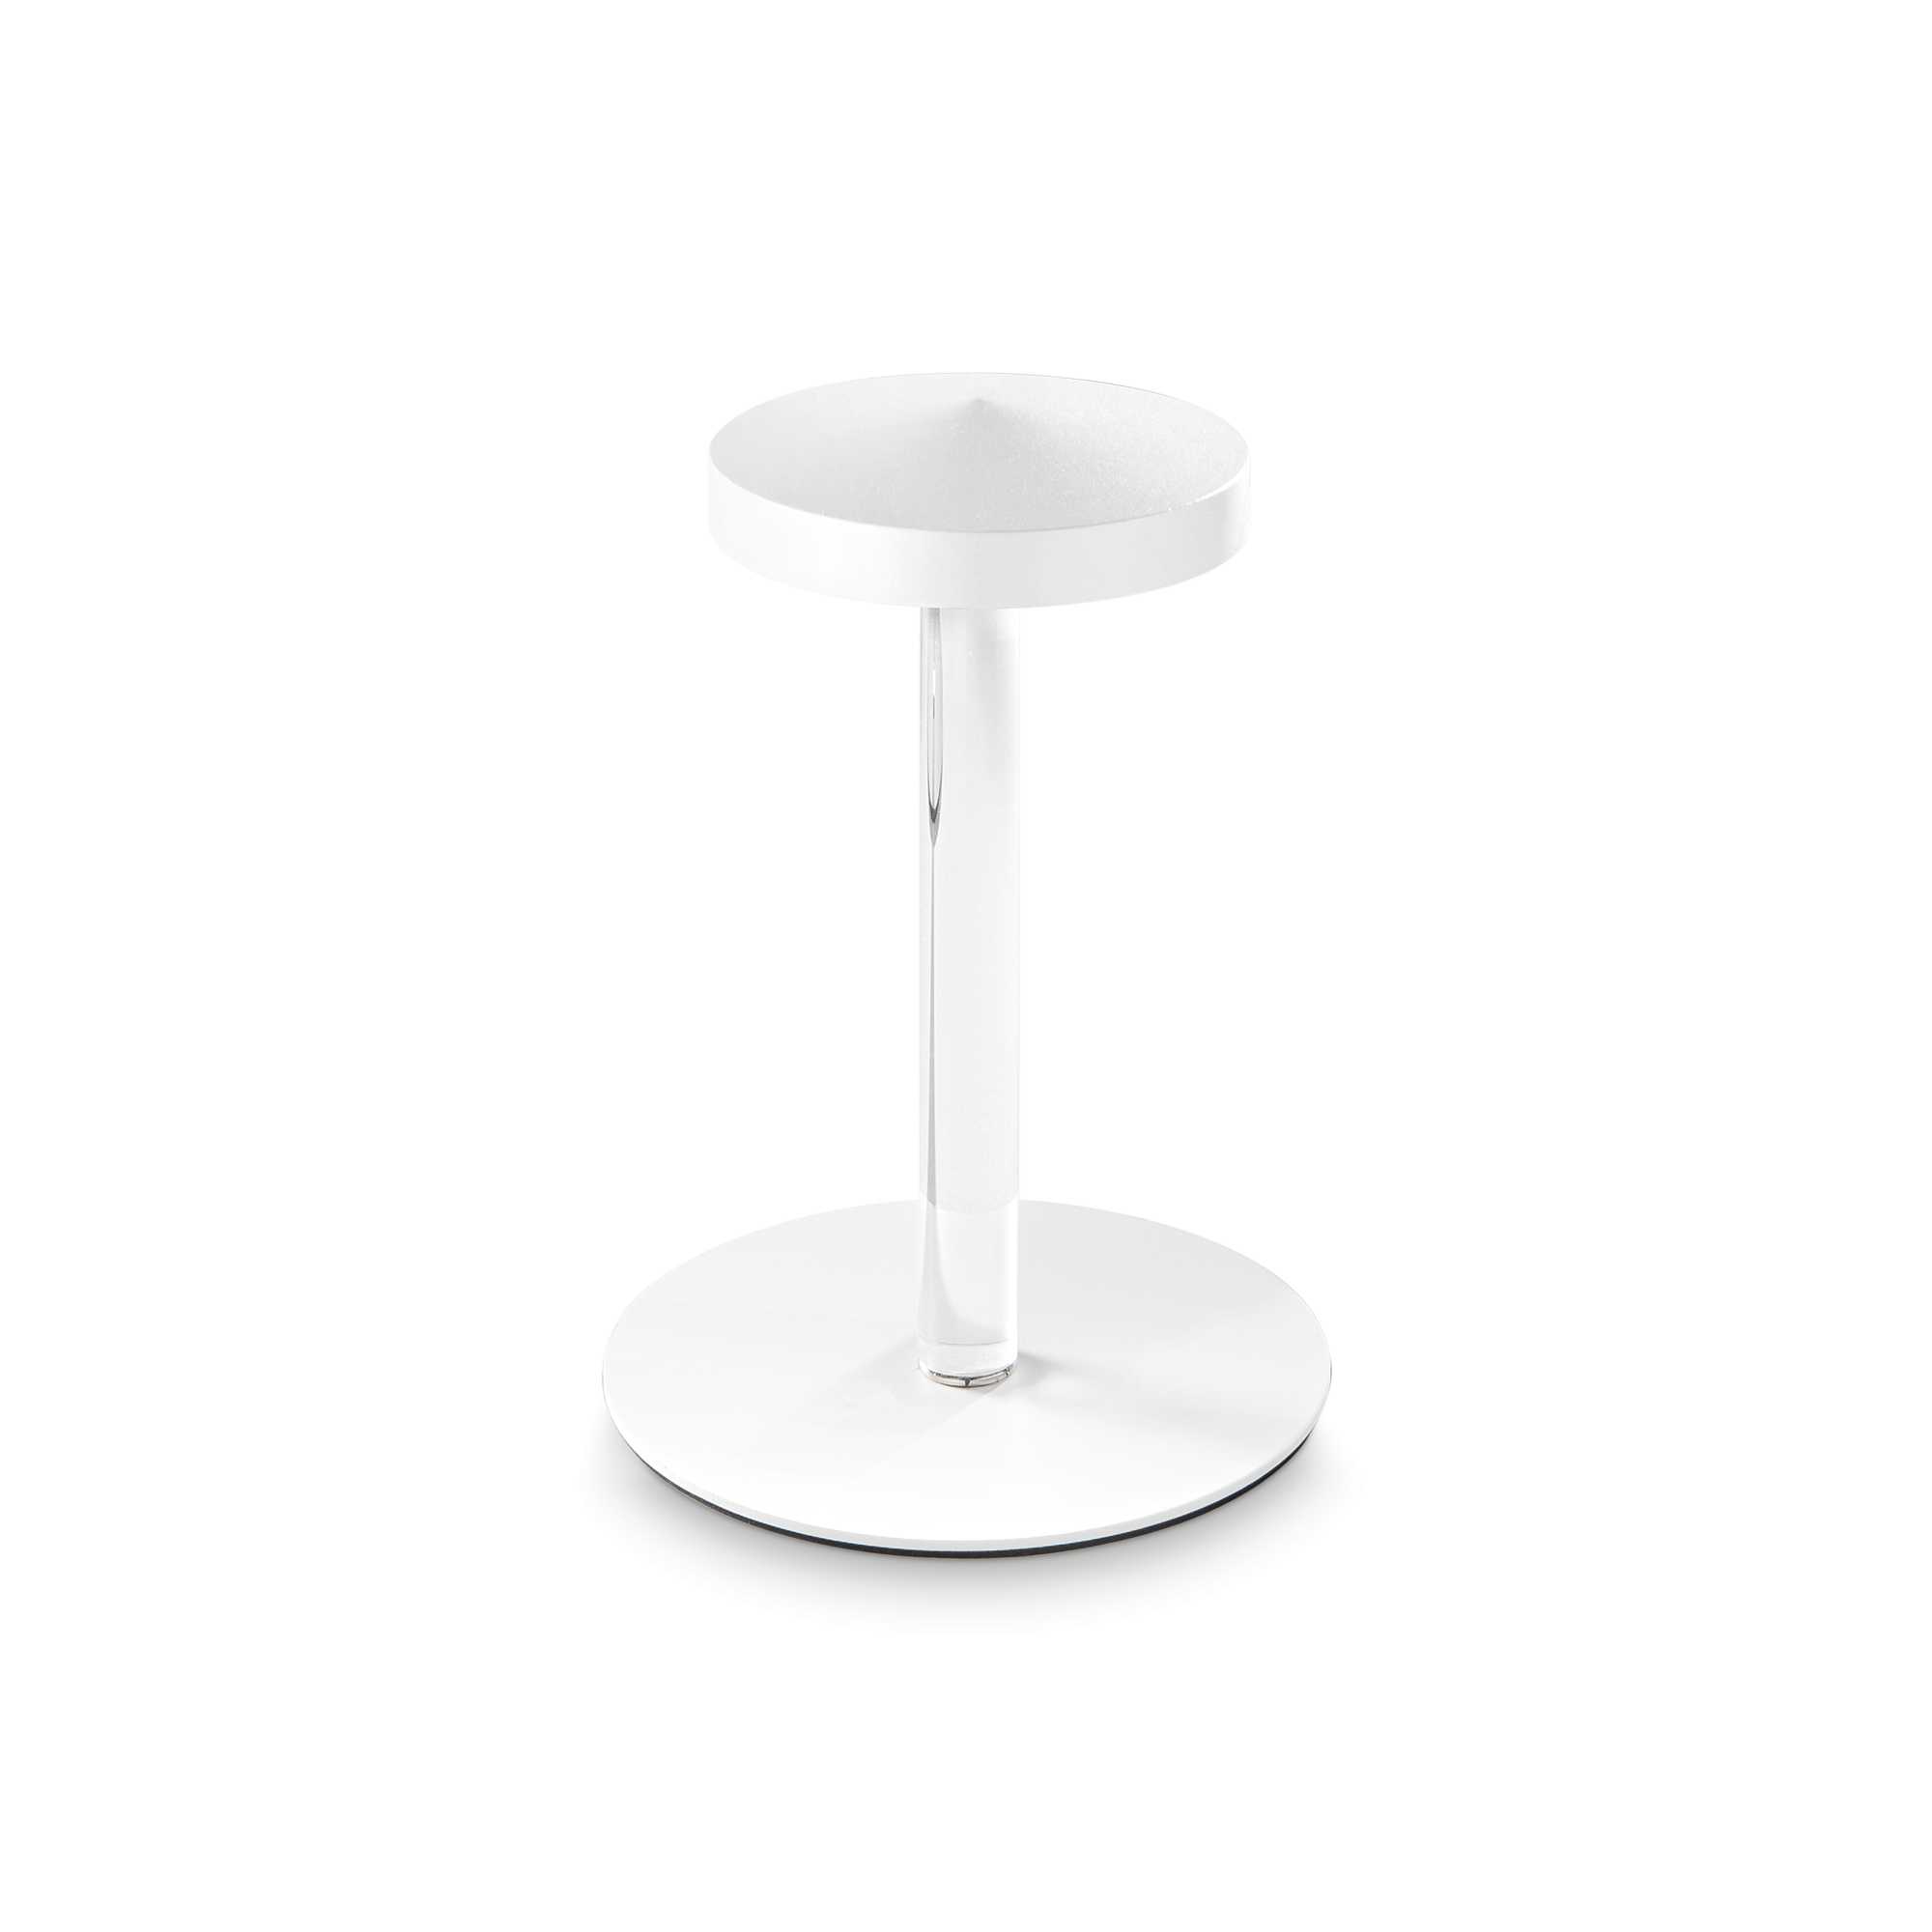 AD hotelska oprema Vanjska stolna lampa Toki tl- Bijele boje slika proizvoda